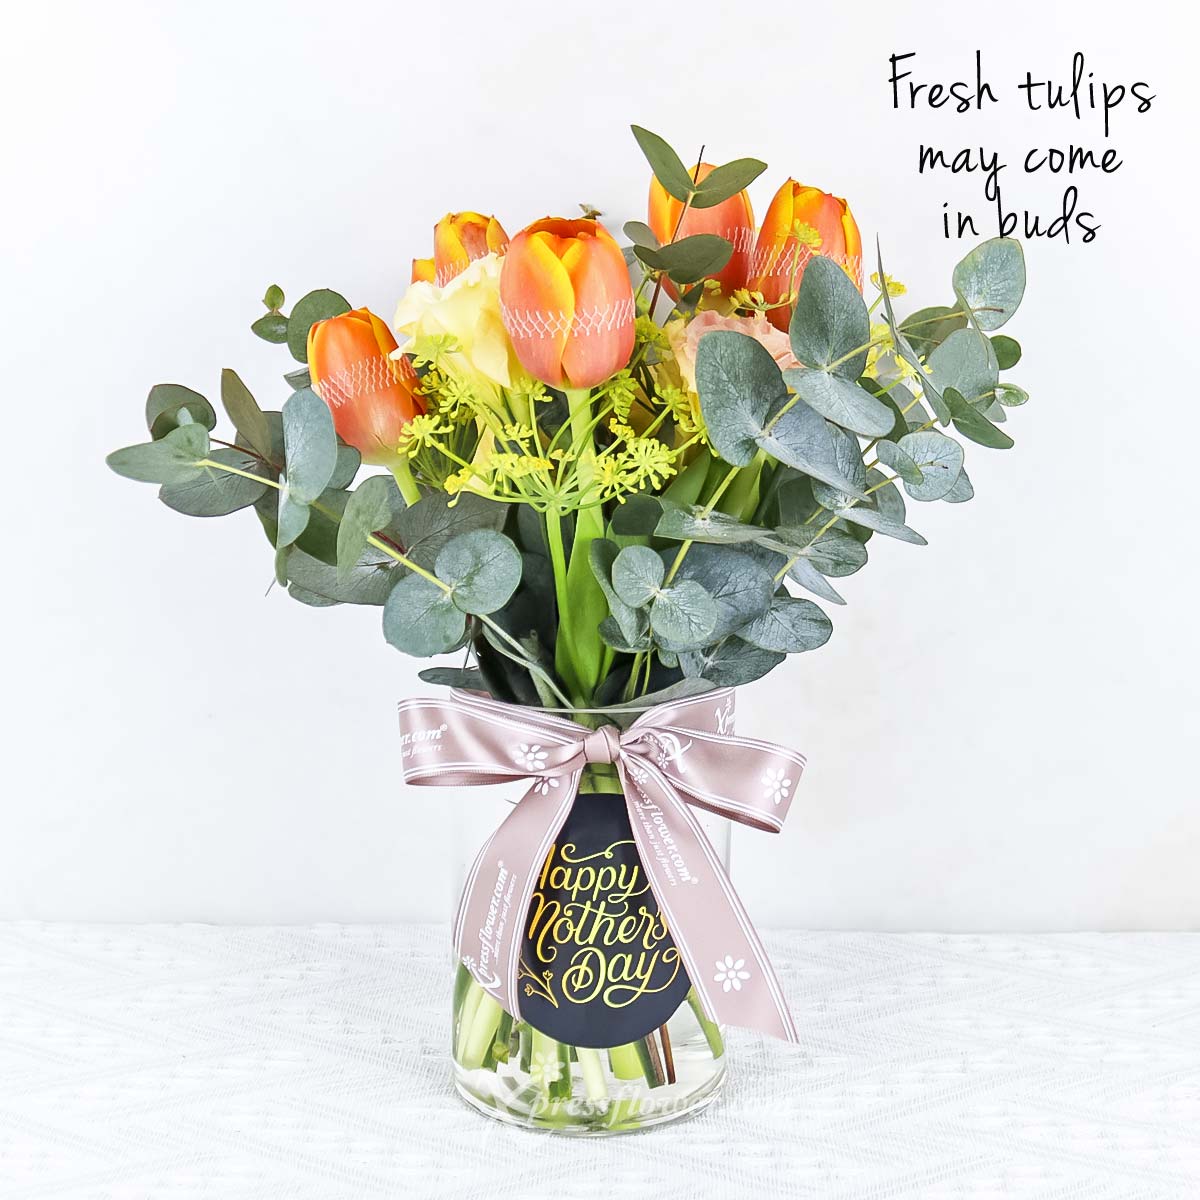 Orange Blossom (6 Orange Tulips with "Happy Mother's Day" vase)